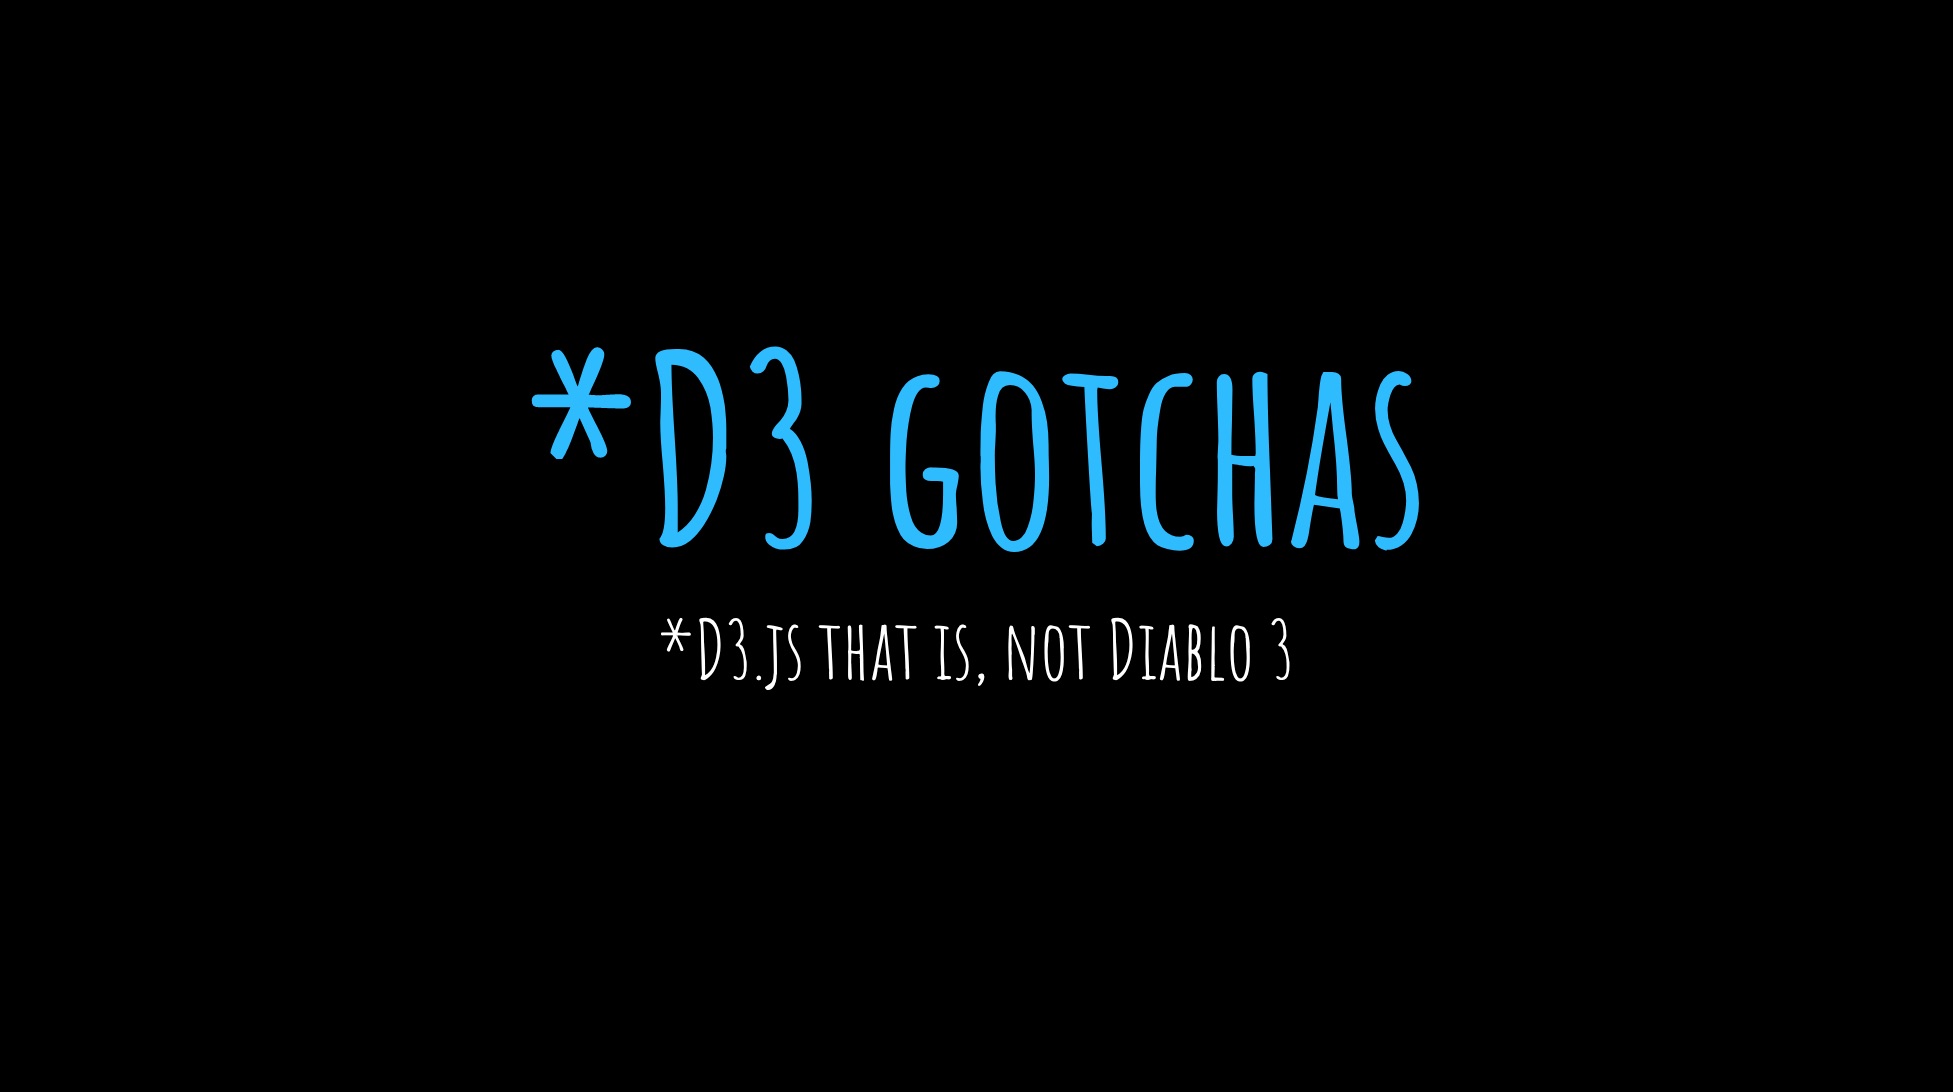 D3 Gotchas